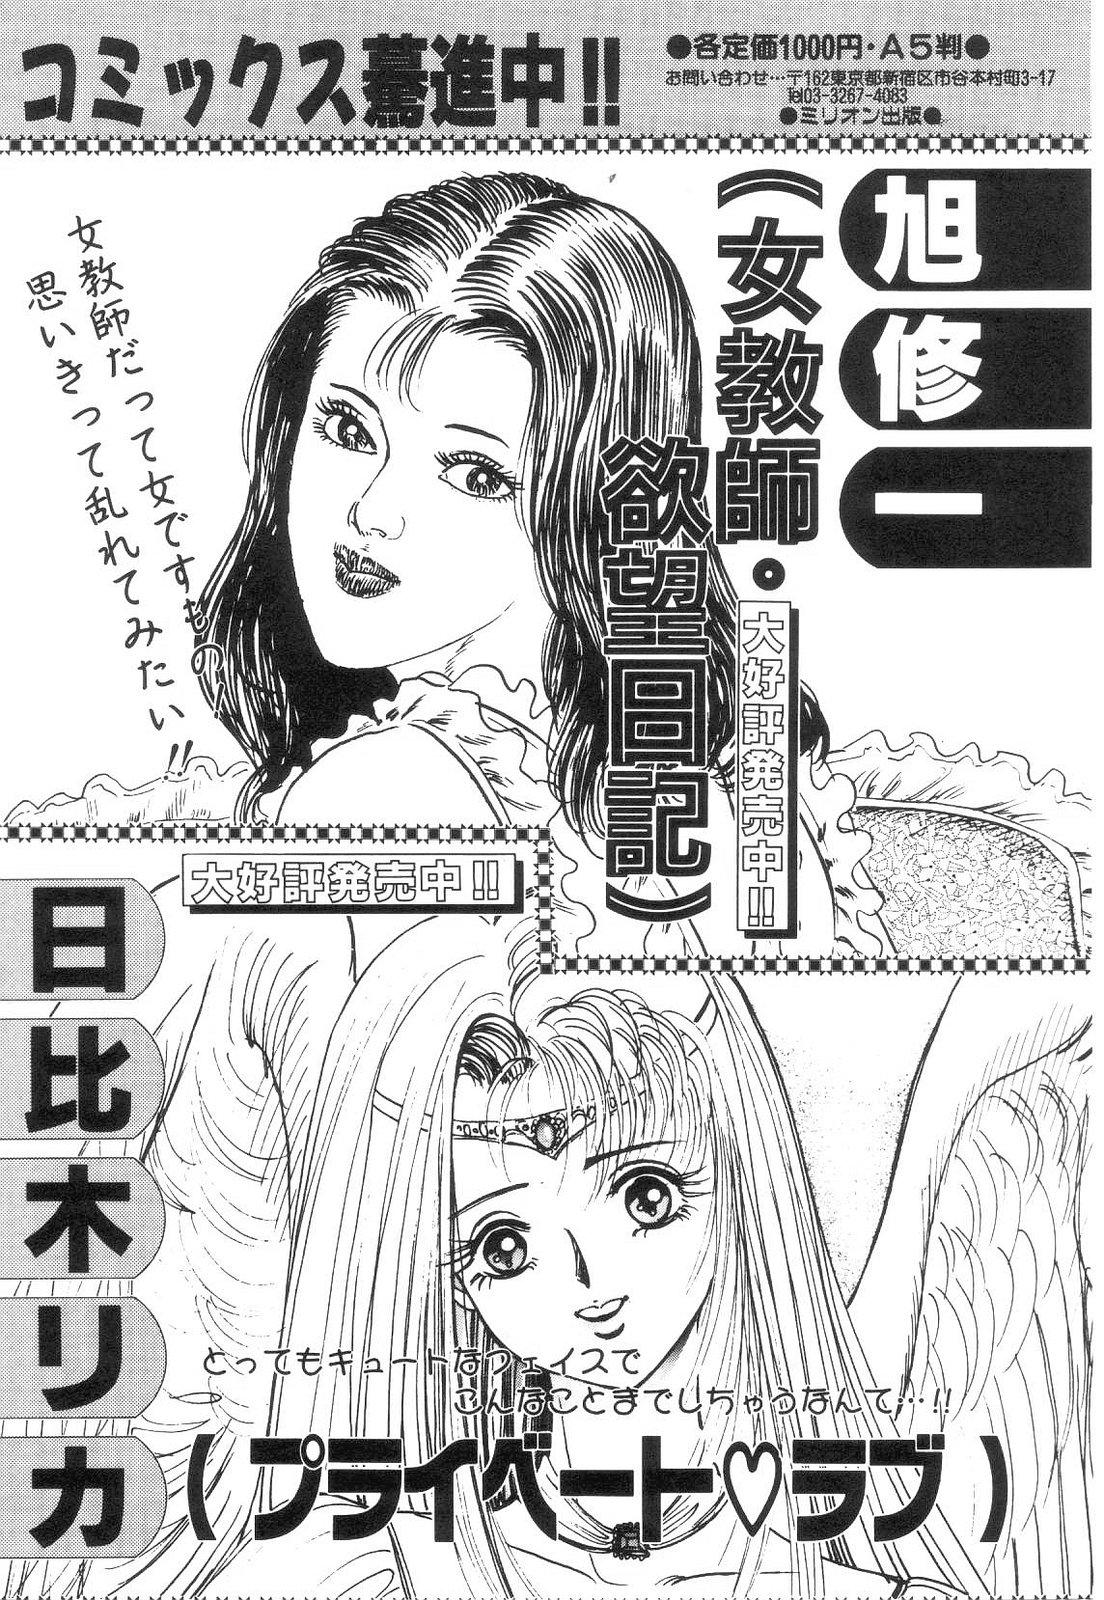 Shiro no Mokushiroku Vol. 4 - Bichiku Karen no Shou 200